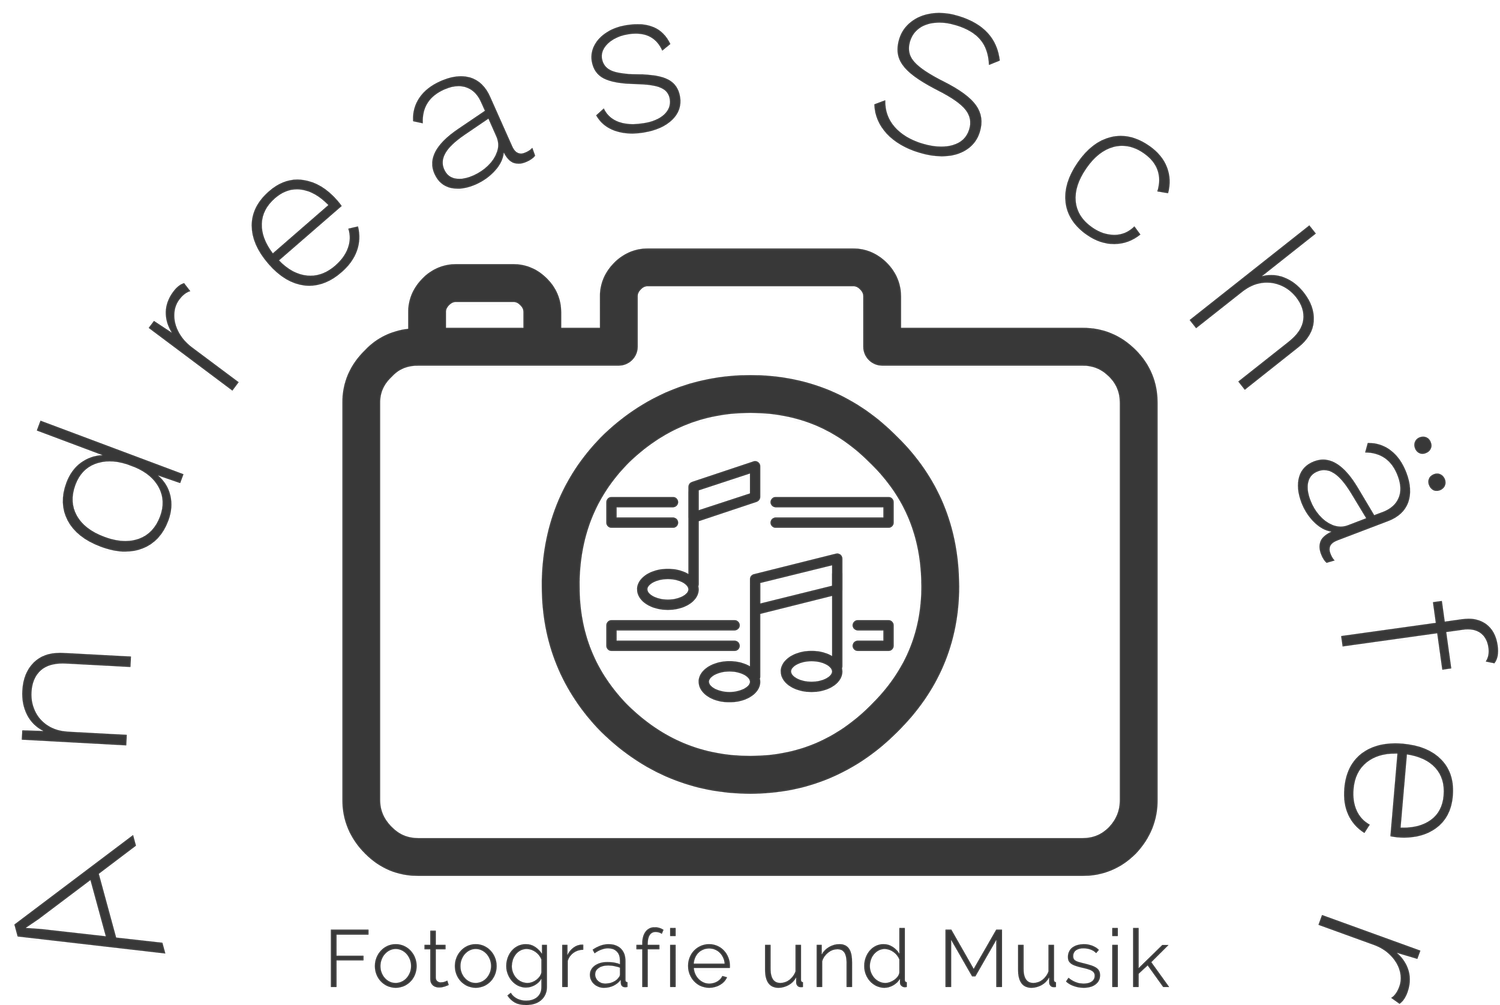 Andreas Schäfer - Fotografie und Musik